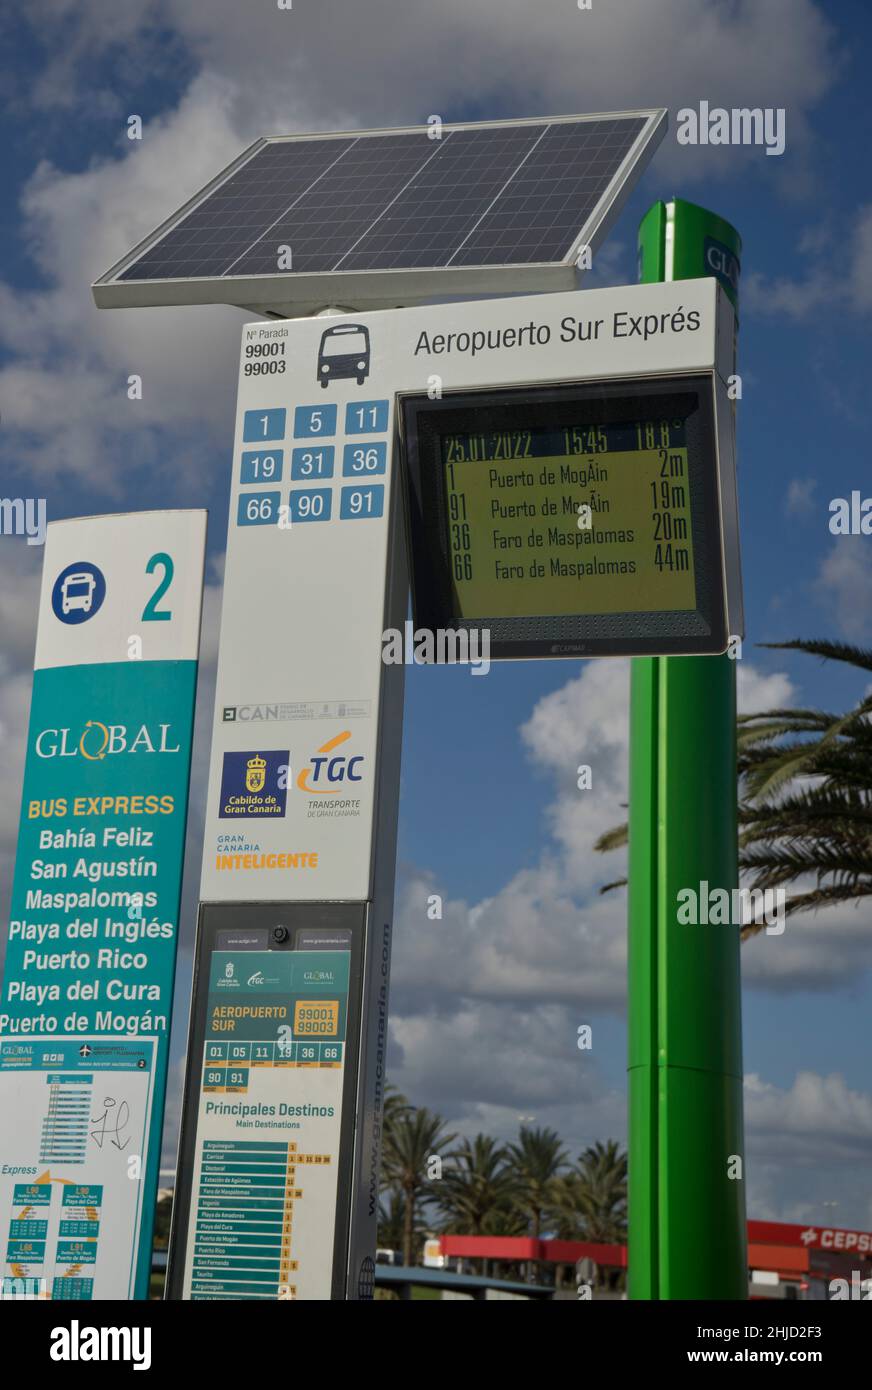 Busbahnhof am internationalen Flughafen Las Palmas auf Gran Canaria;  Spanien, Europa Stockfotografie - Alamy